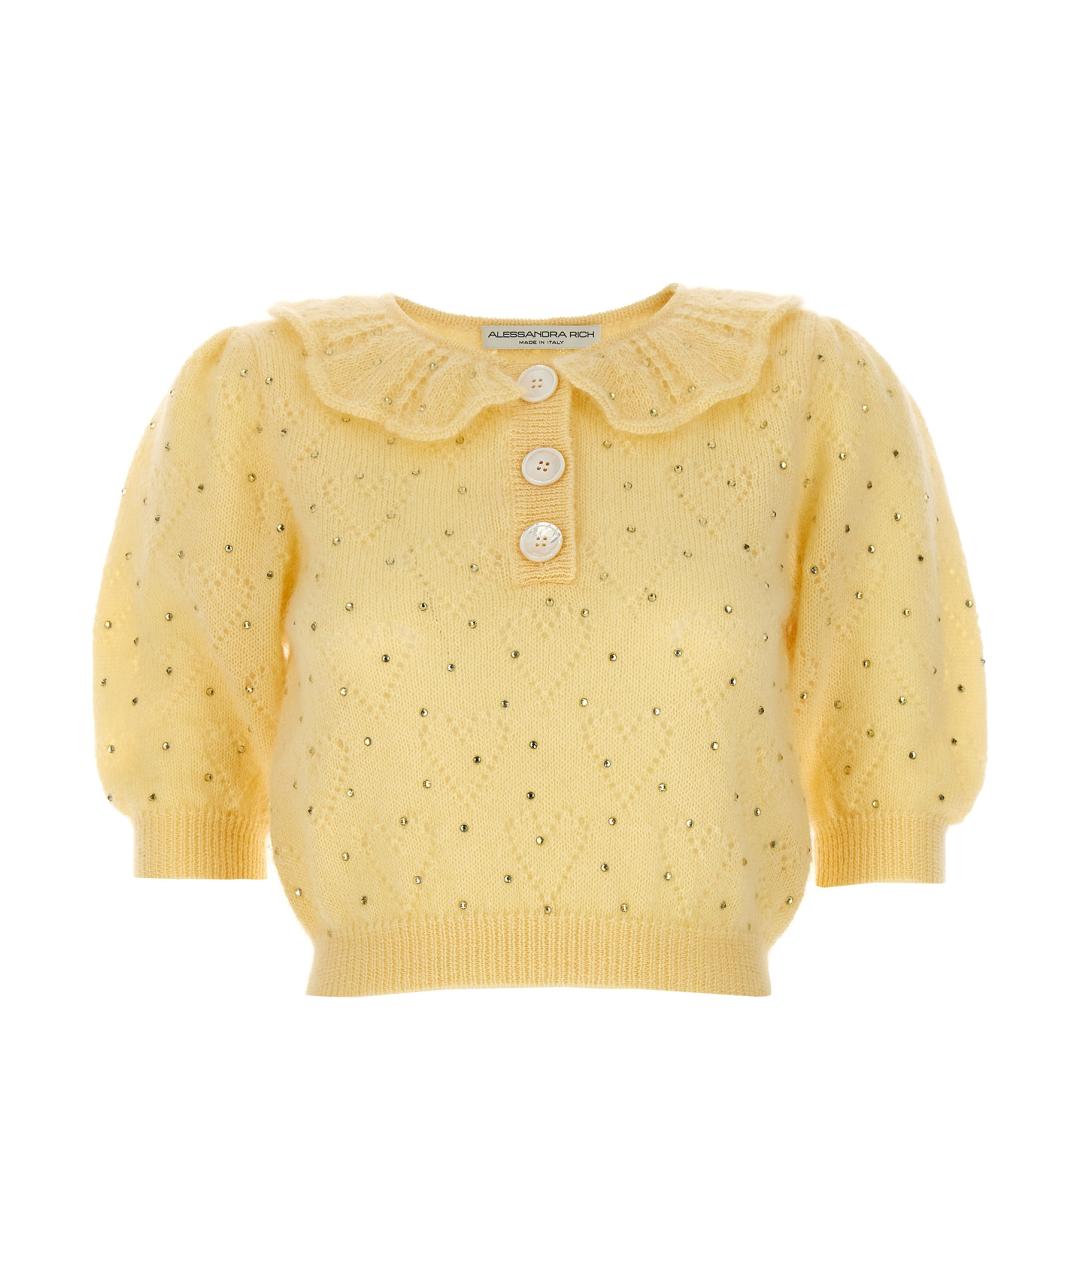 ALESSANDRA RICH Желтый шерстяной джемпер / свитер, фото 1